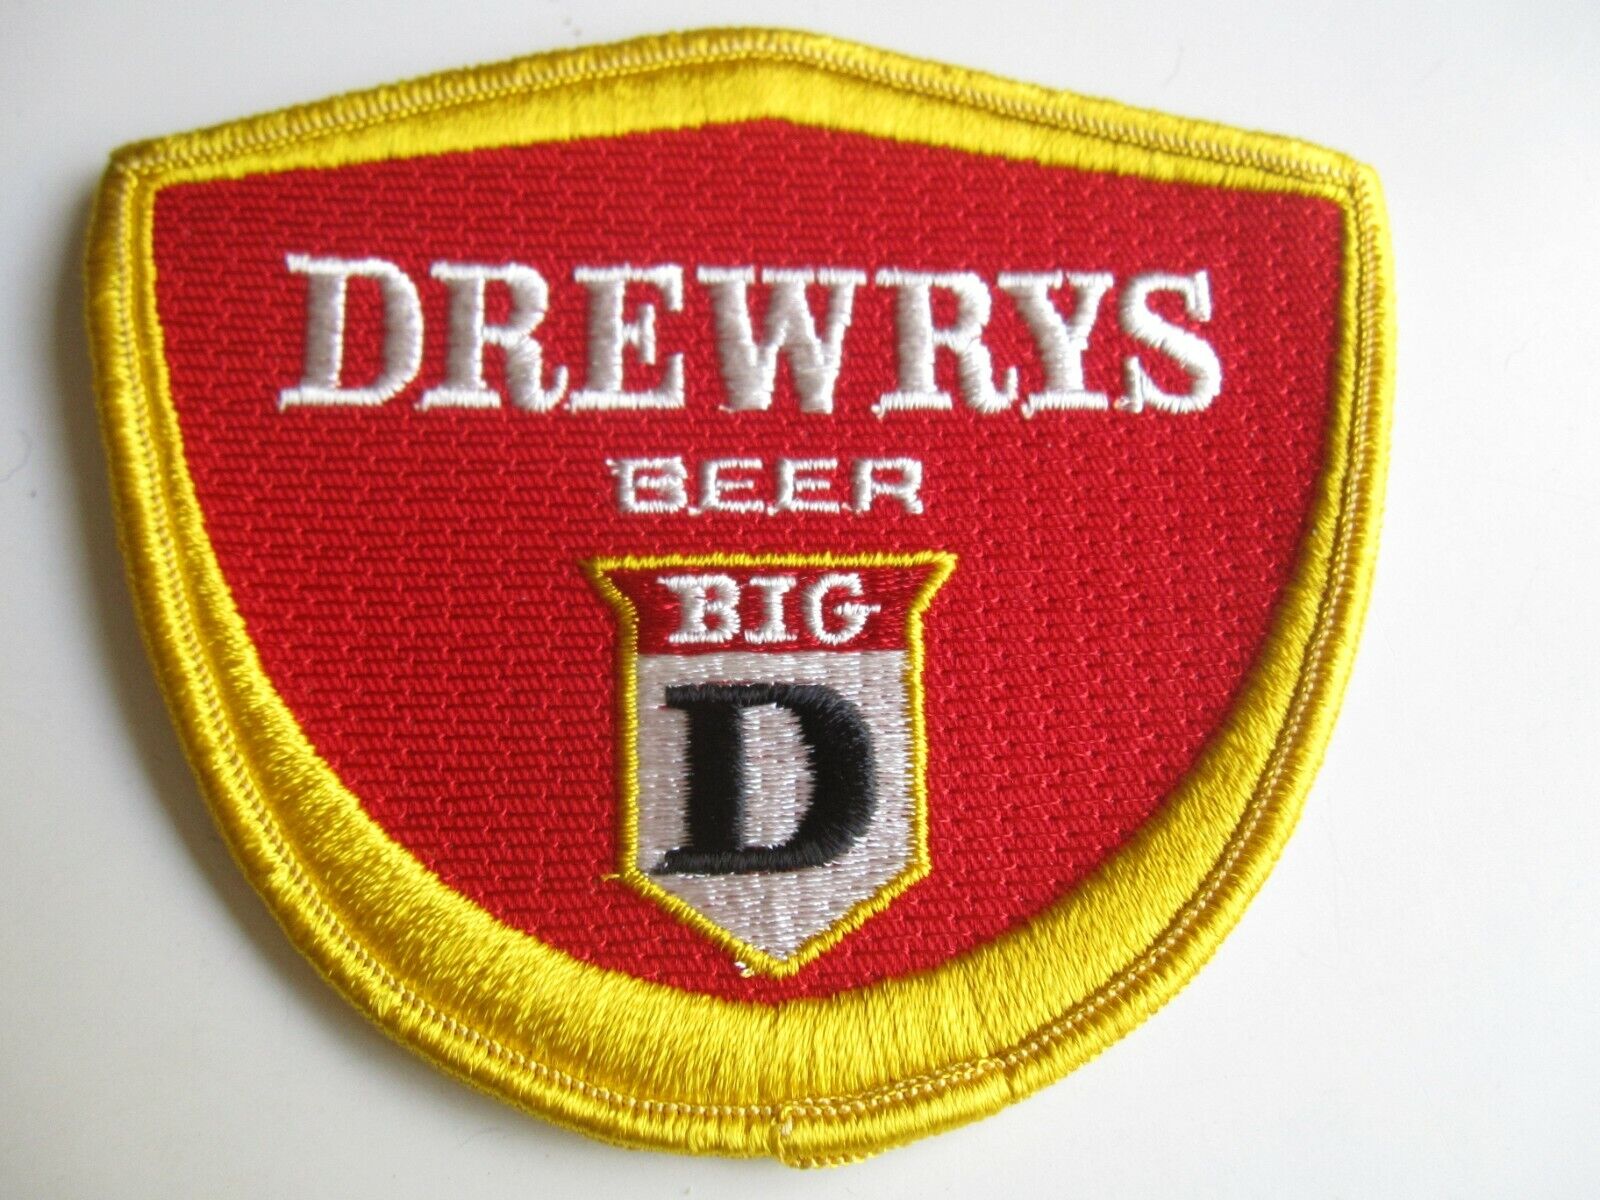  Vintage Drewrys Big D Beer New Old Stock Cloth Shoulder Patch BIS